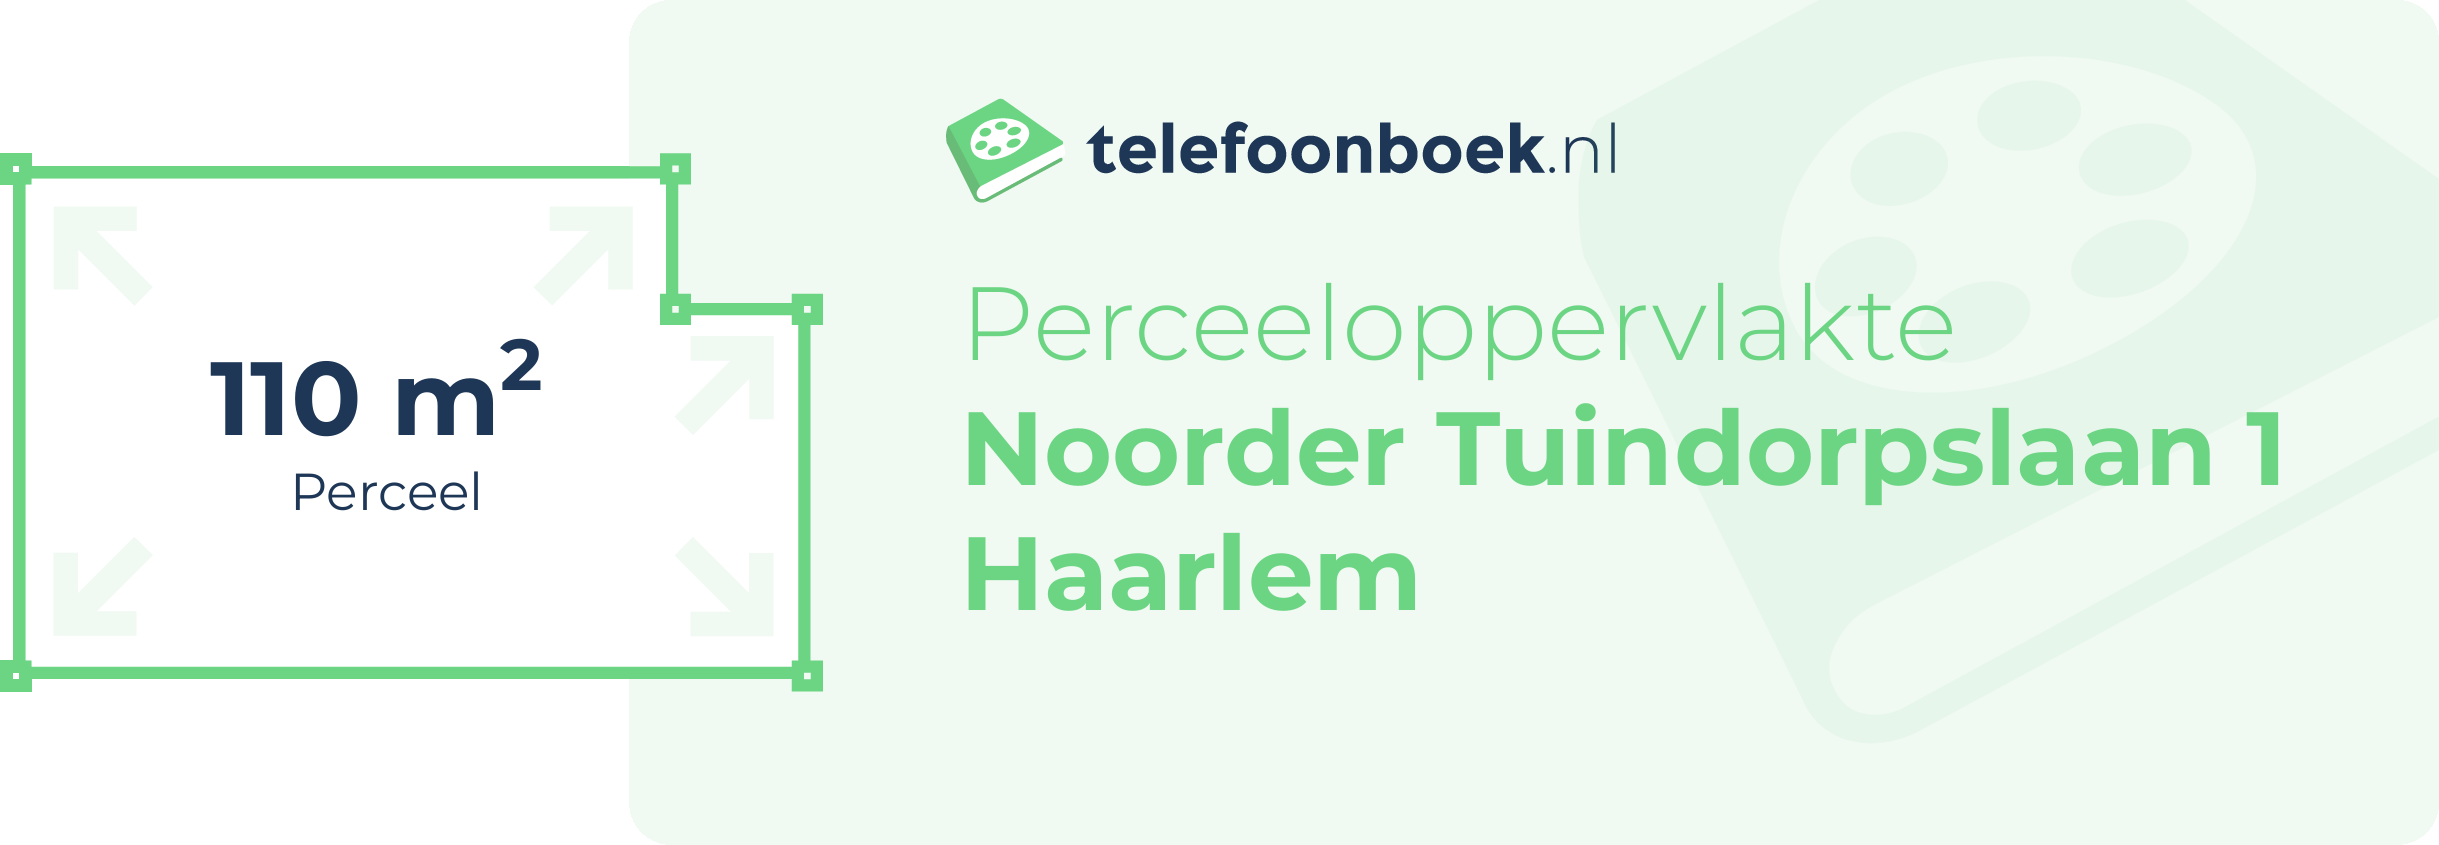 Perceeloppervlakte Noorder Tuindorpslaan 1 Haarlem